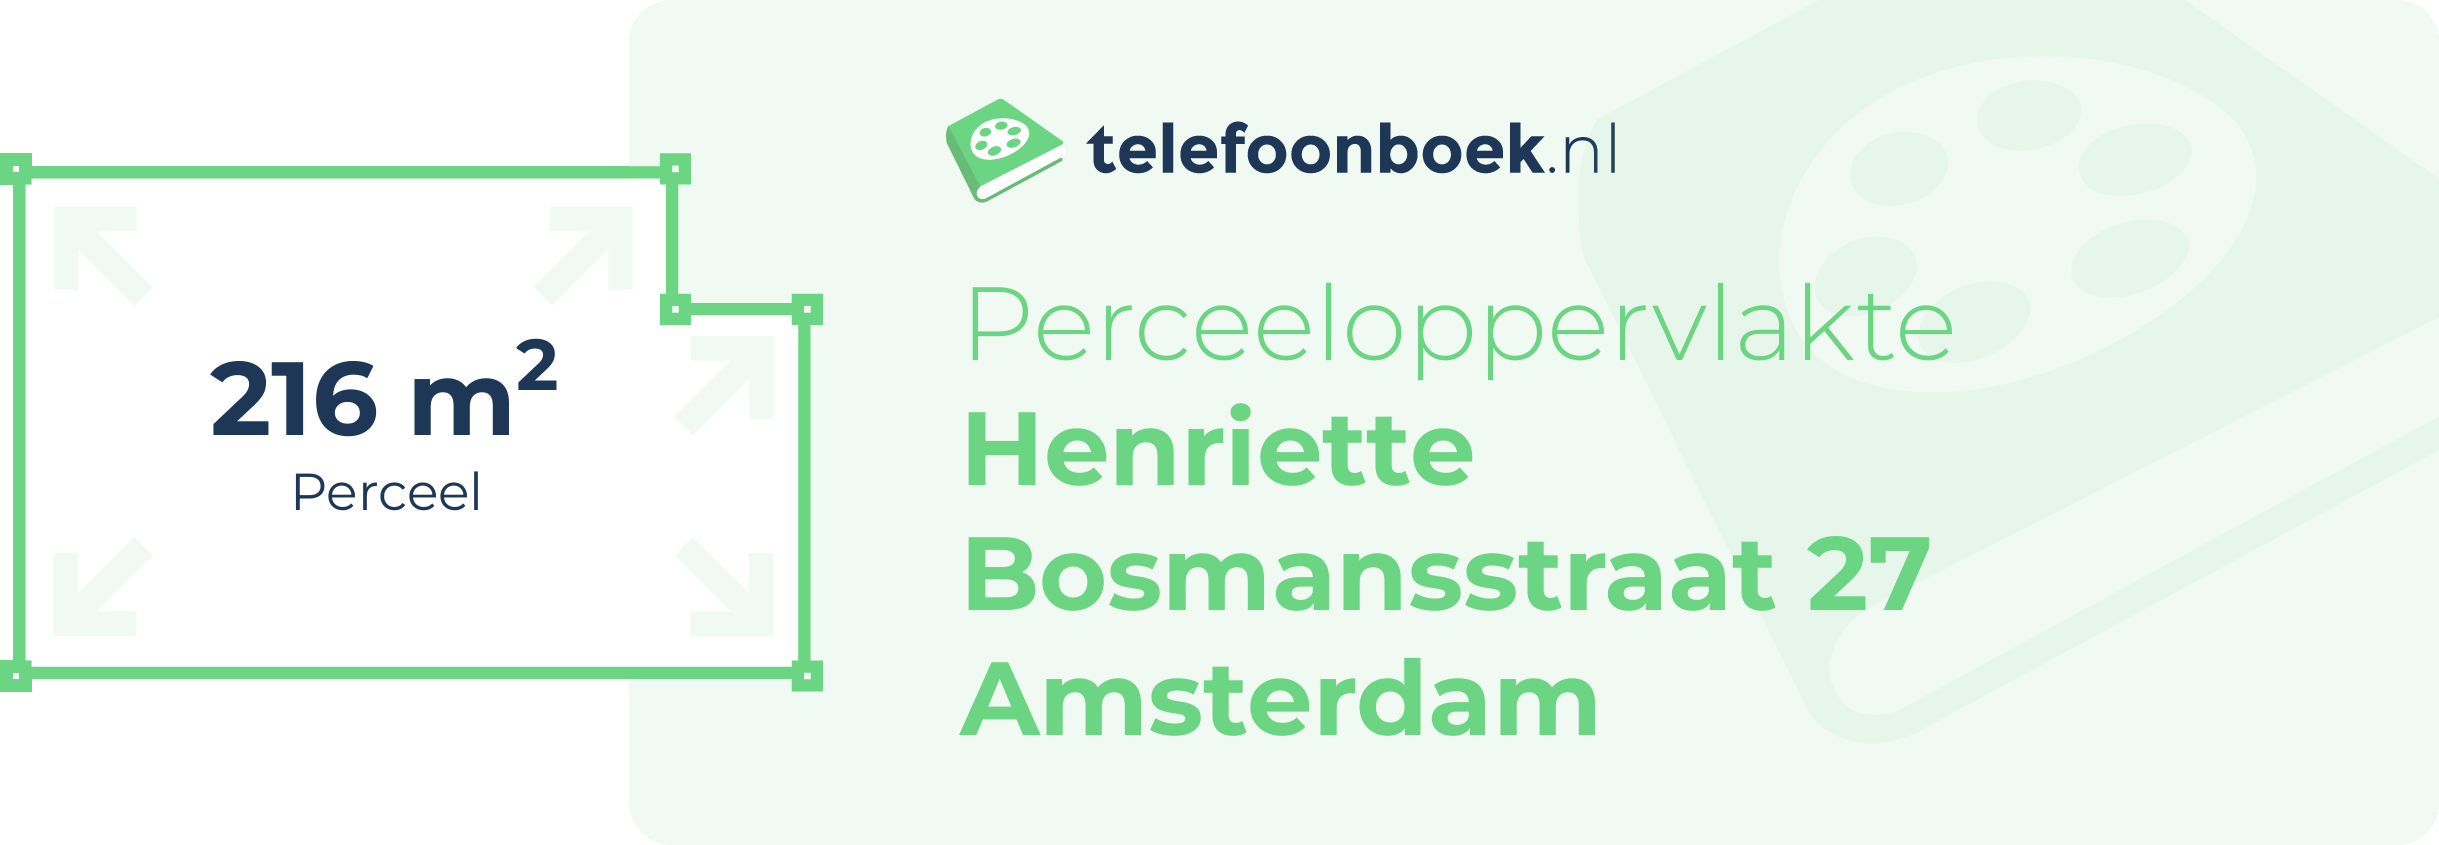 Perceeloppervlakte Henriette Bosmansstraat 27 Amsterdam